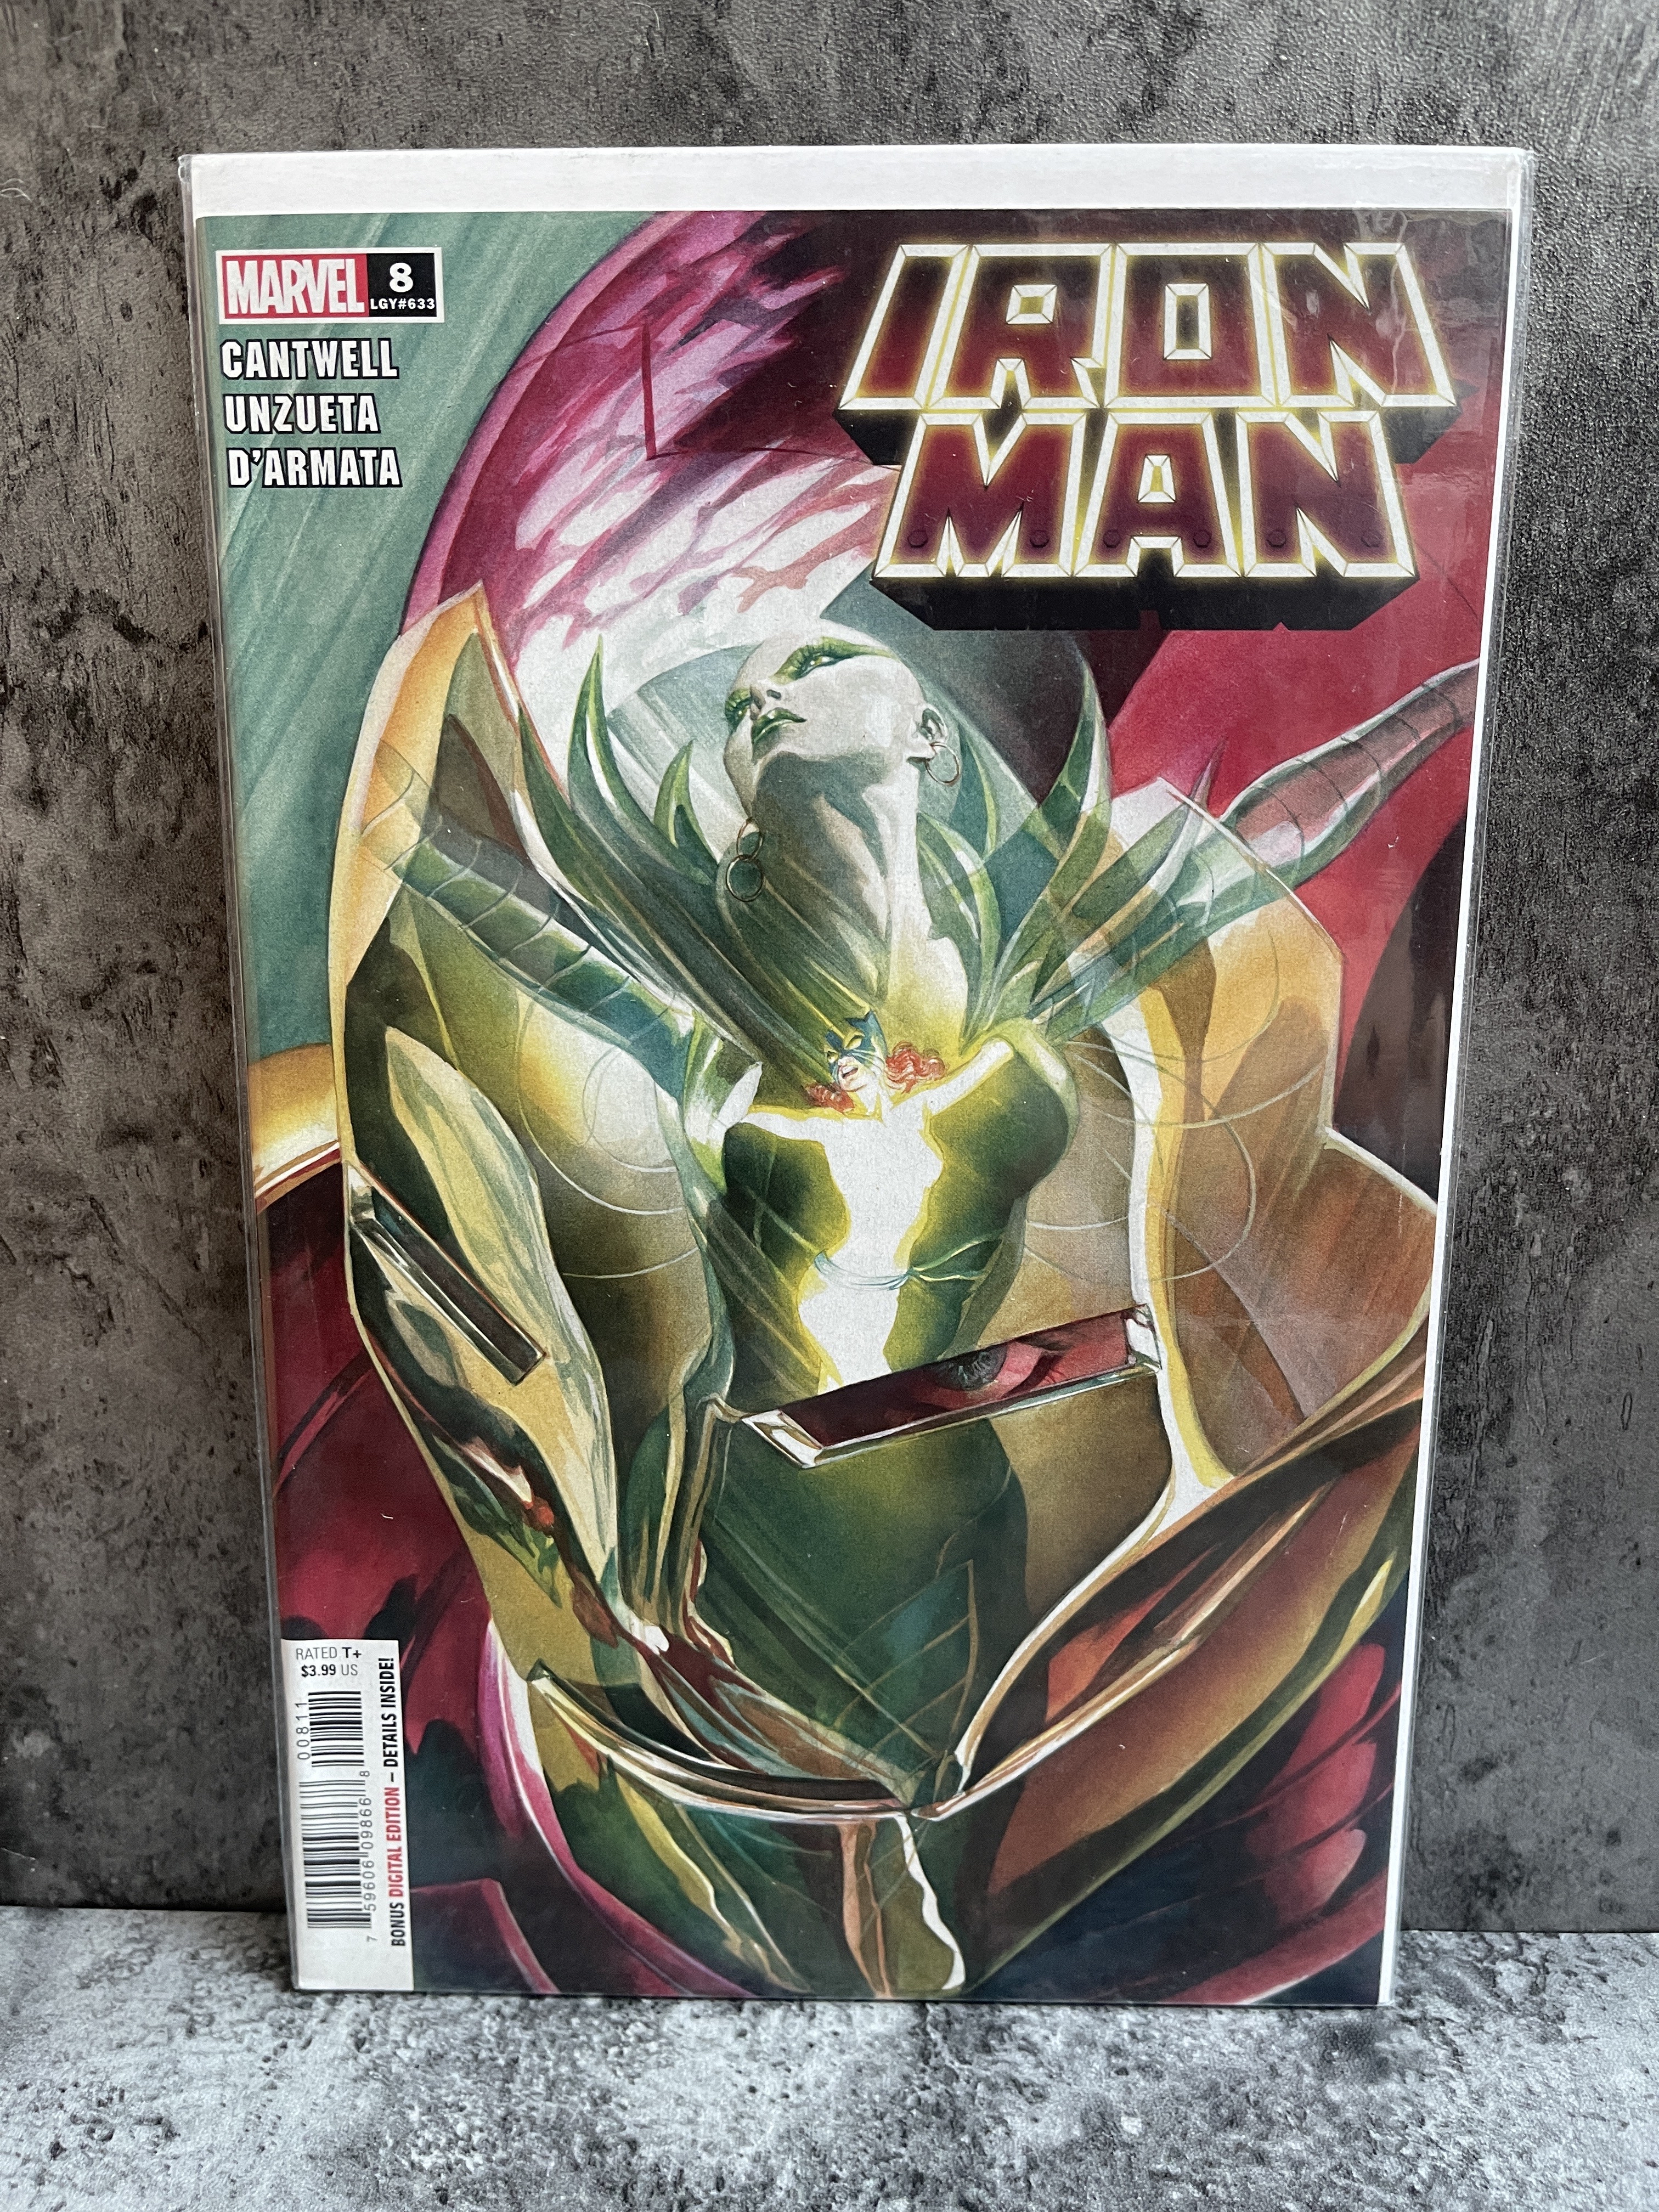 《本期全是好刊》美漫杂志海报刊物限定变体可评cgc钢铁侠ironman